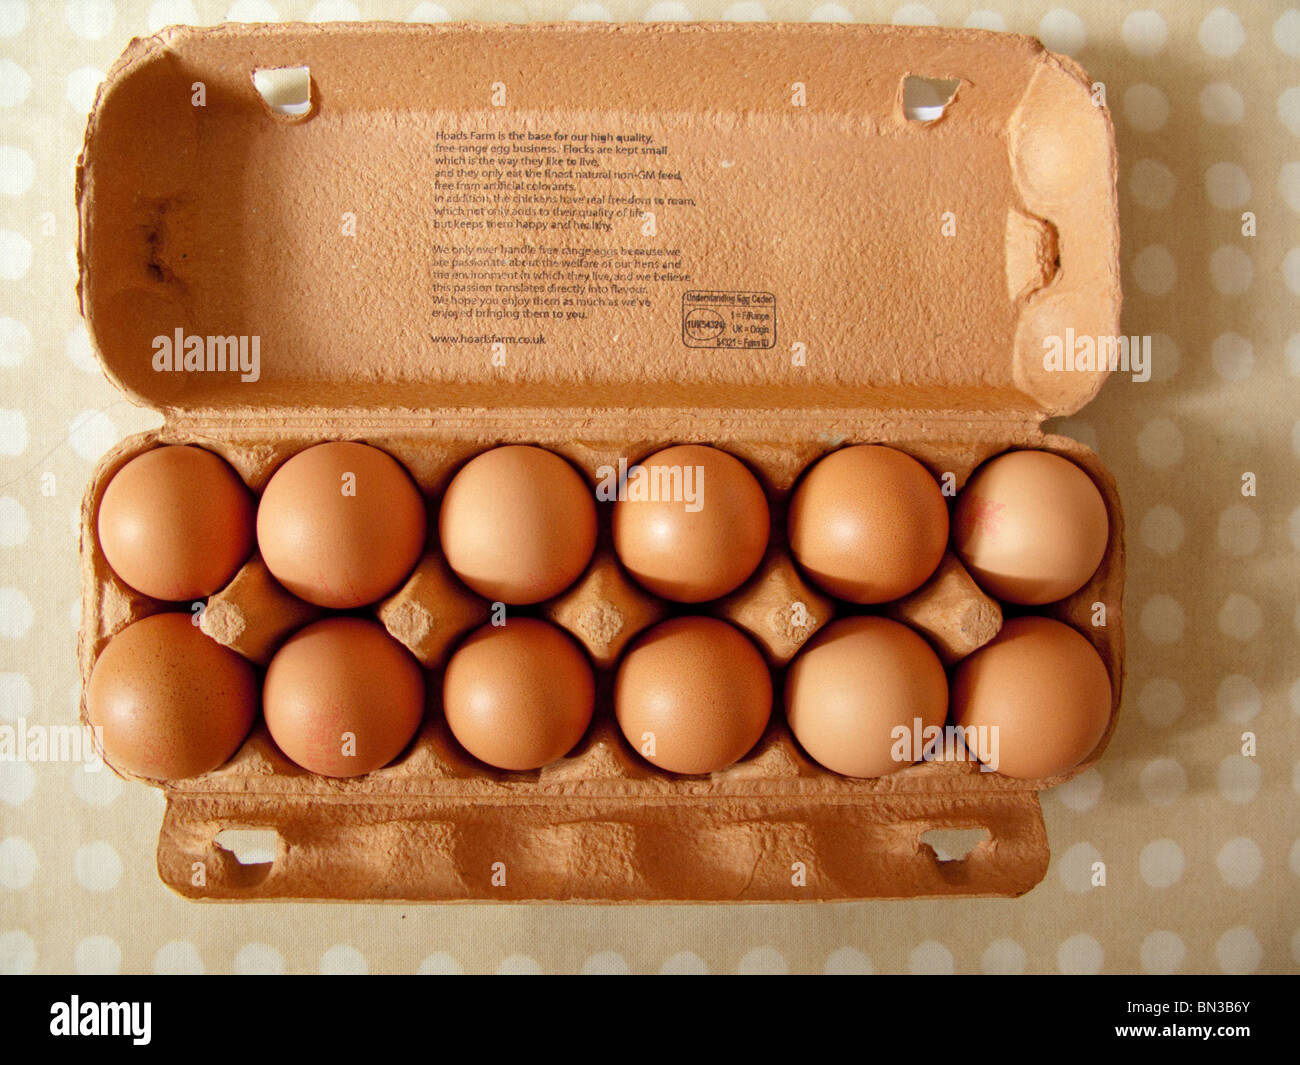 A dozen brown eggs in a carton on a kitchen table. Stock Photo